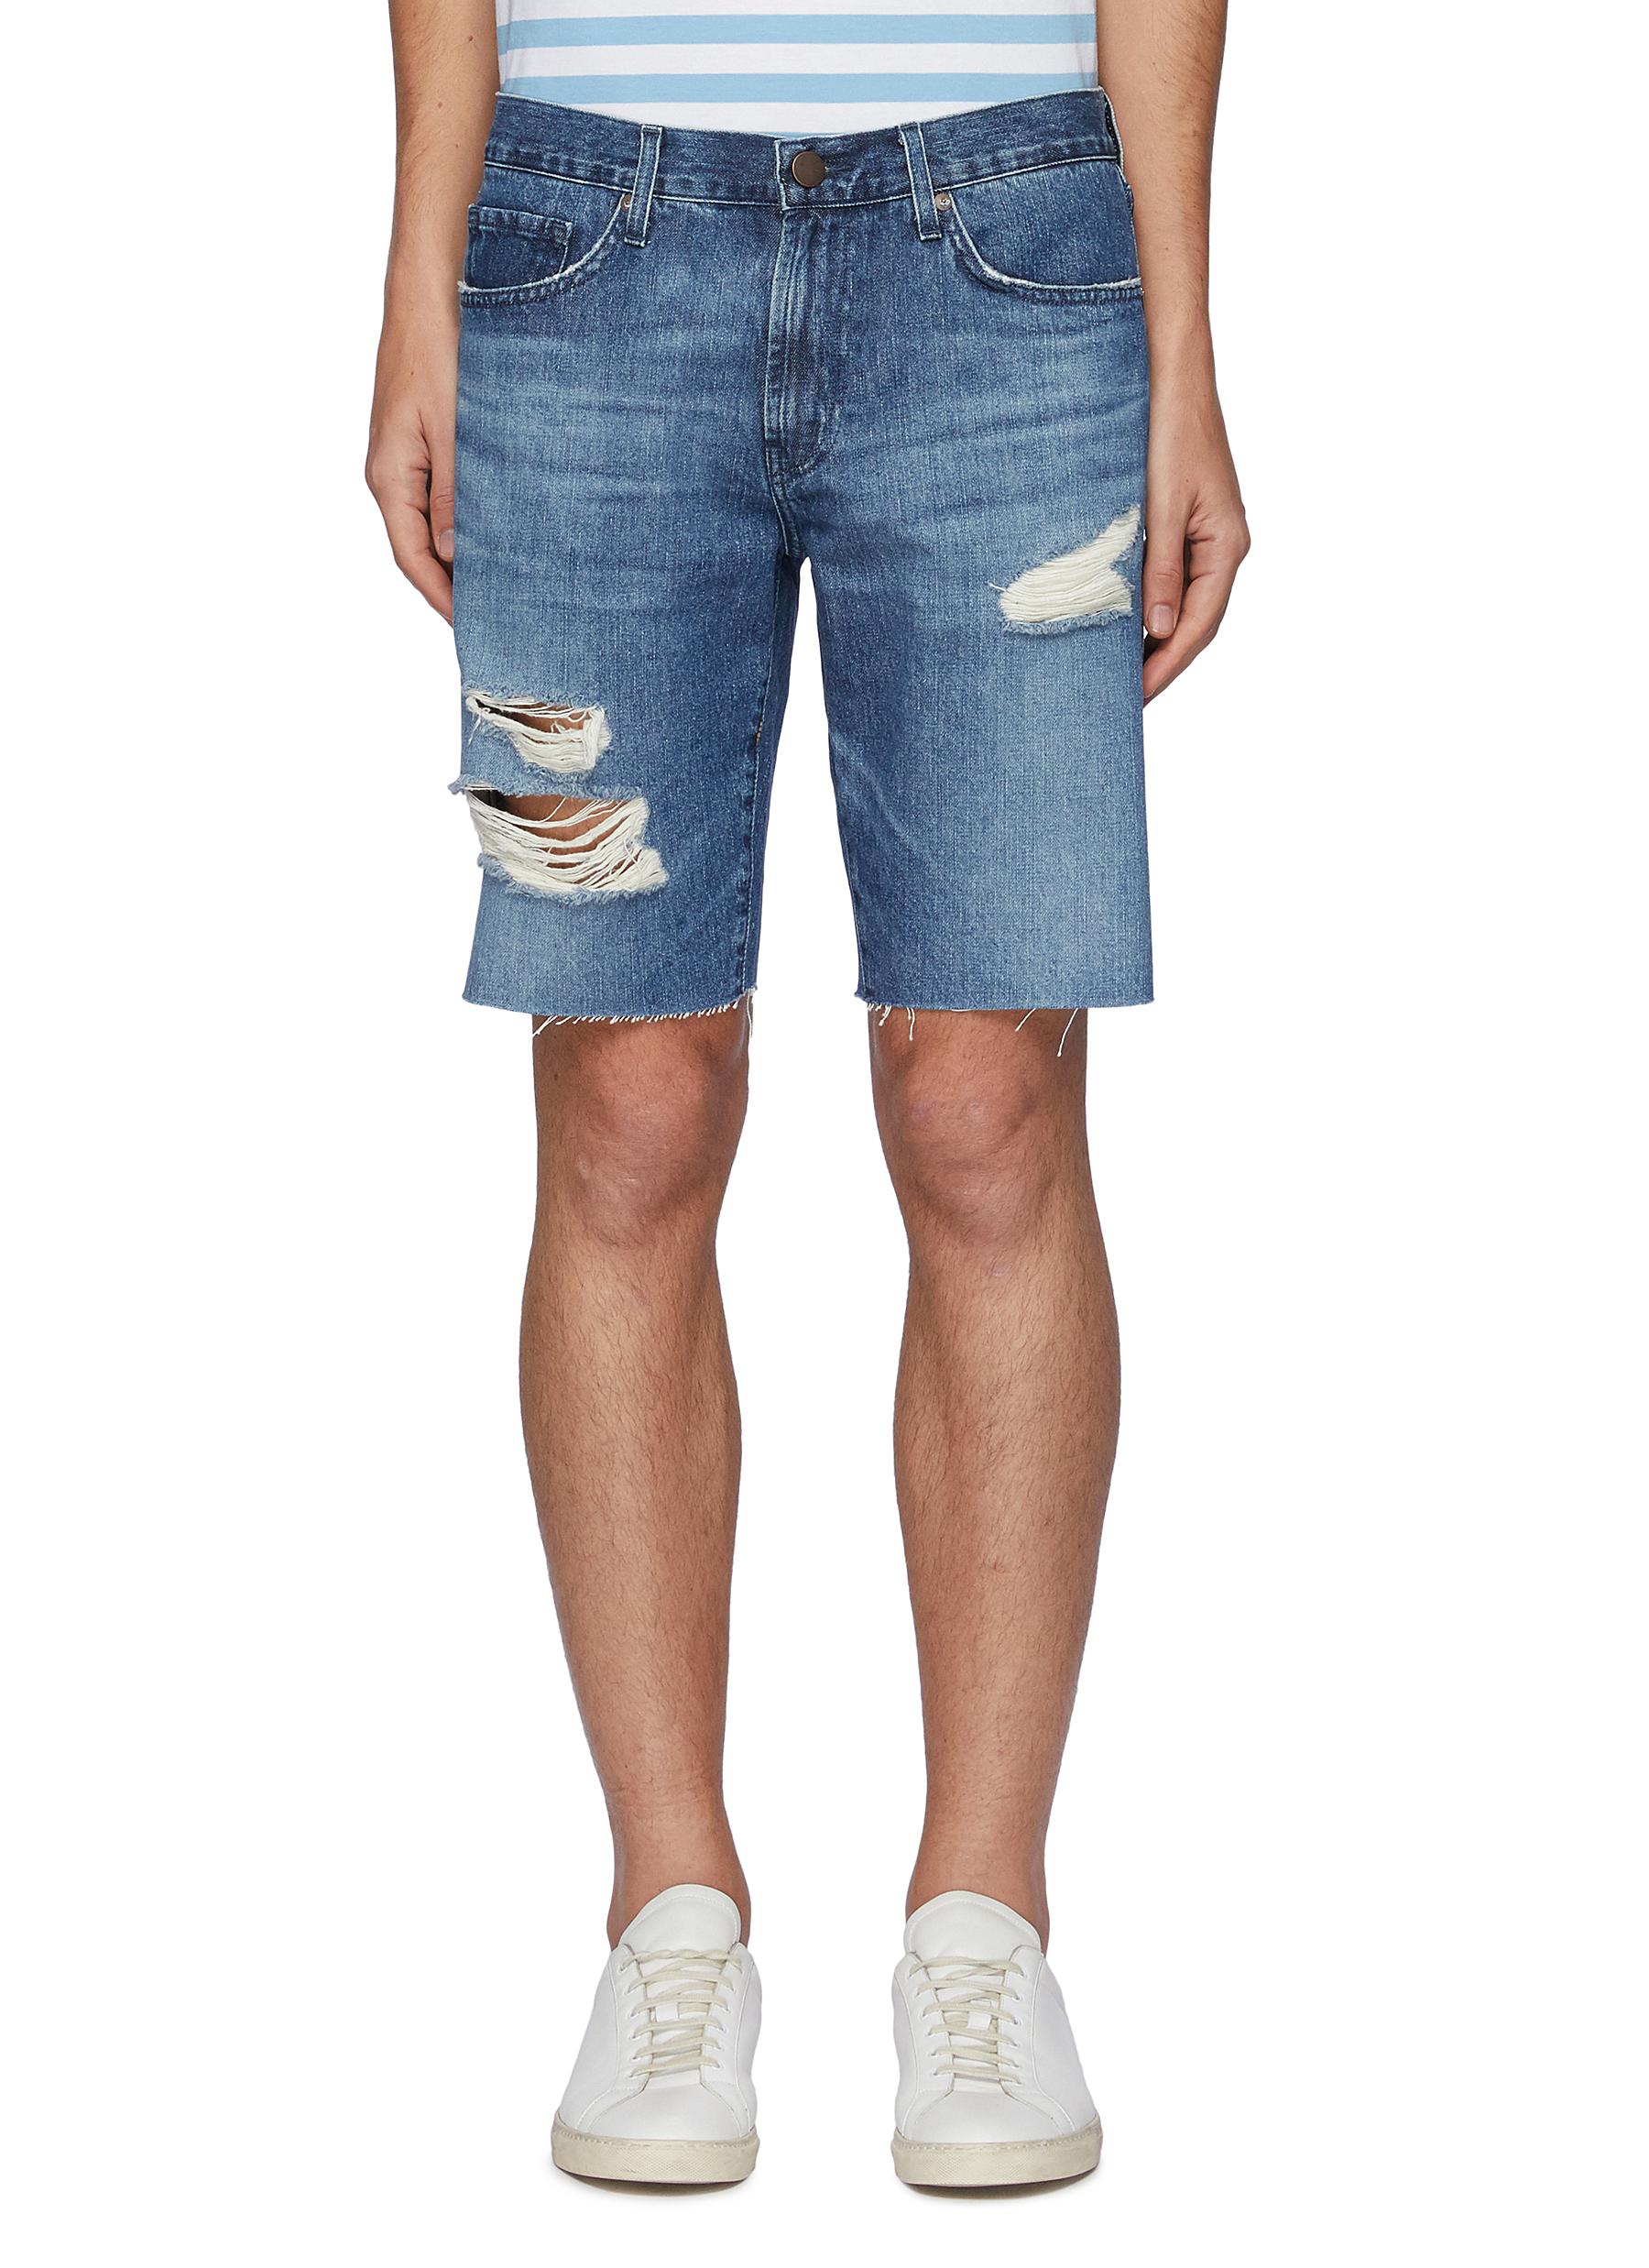 Buy > j brand denim shorts > in stock